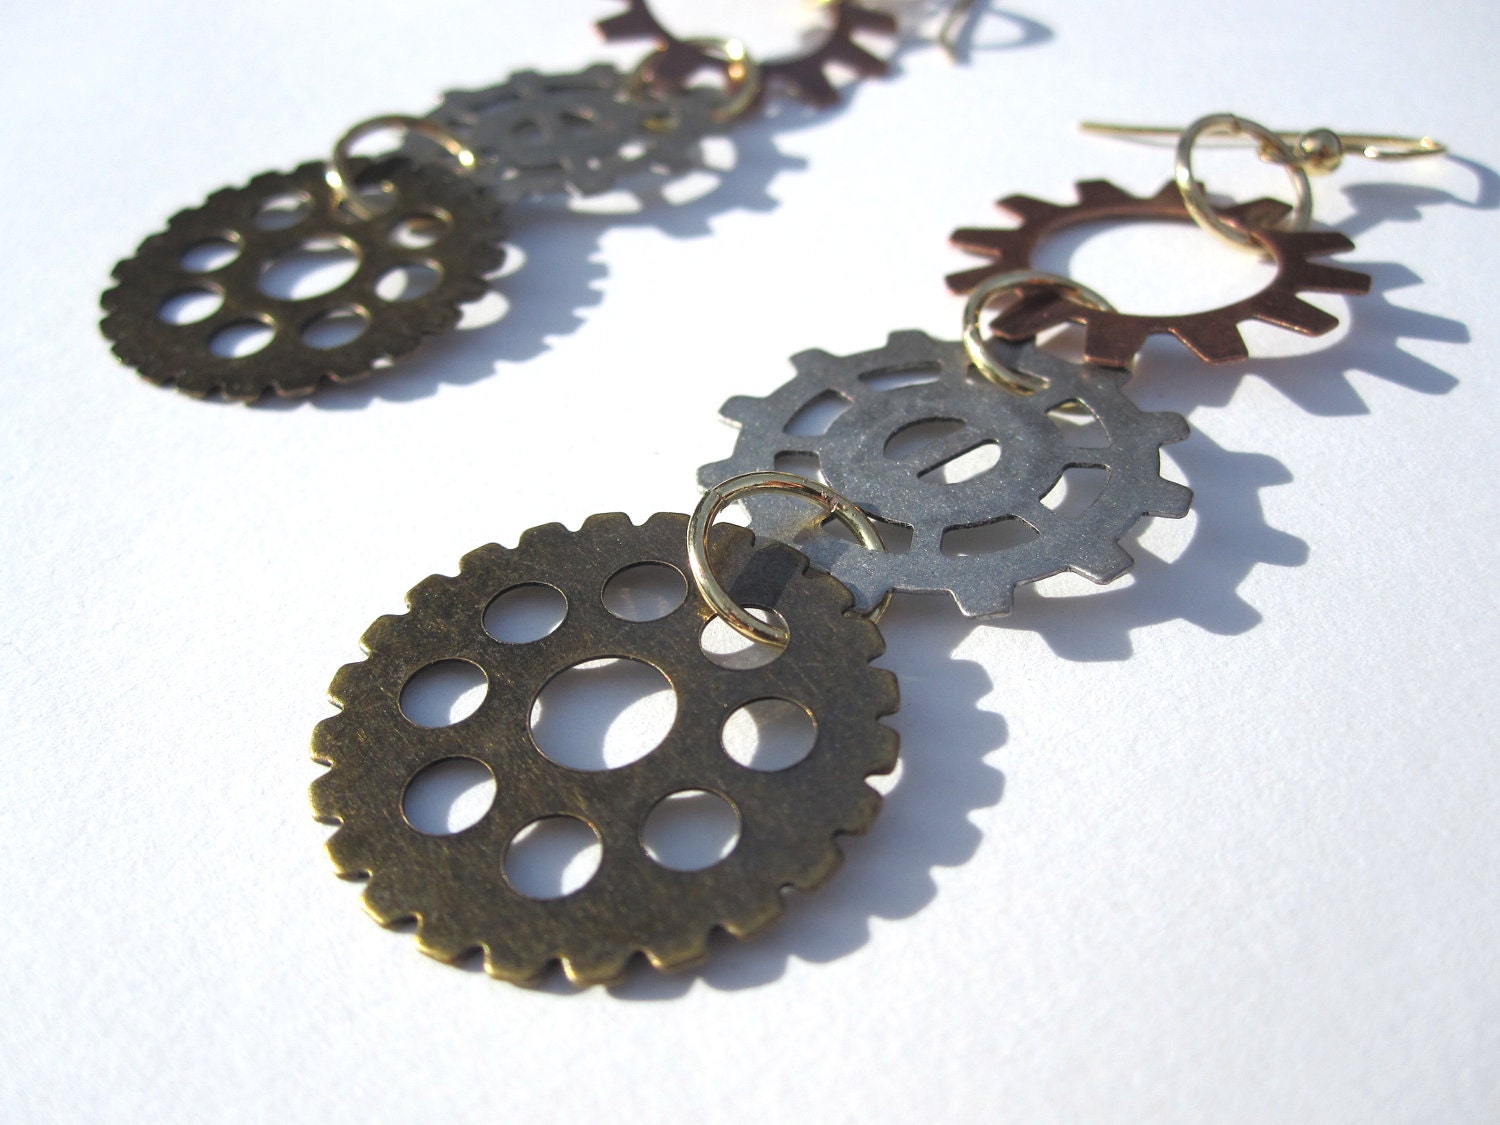 Gold, Copper & Silver Industrial Gears Mixed Metal Chandelier Earrings - Women's Gift